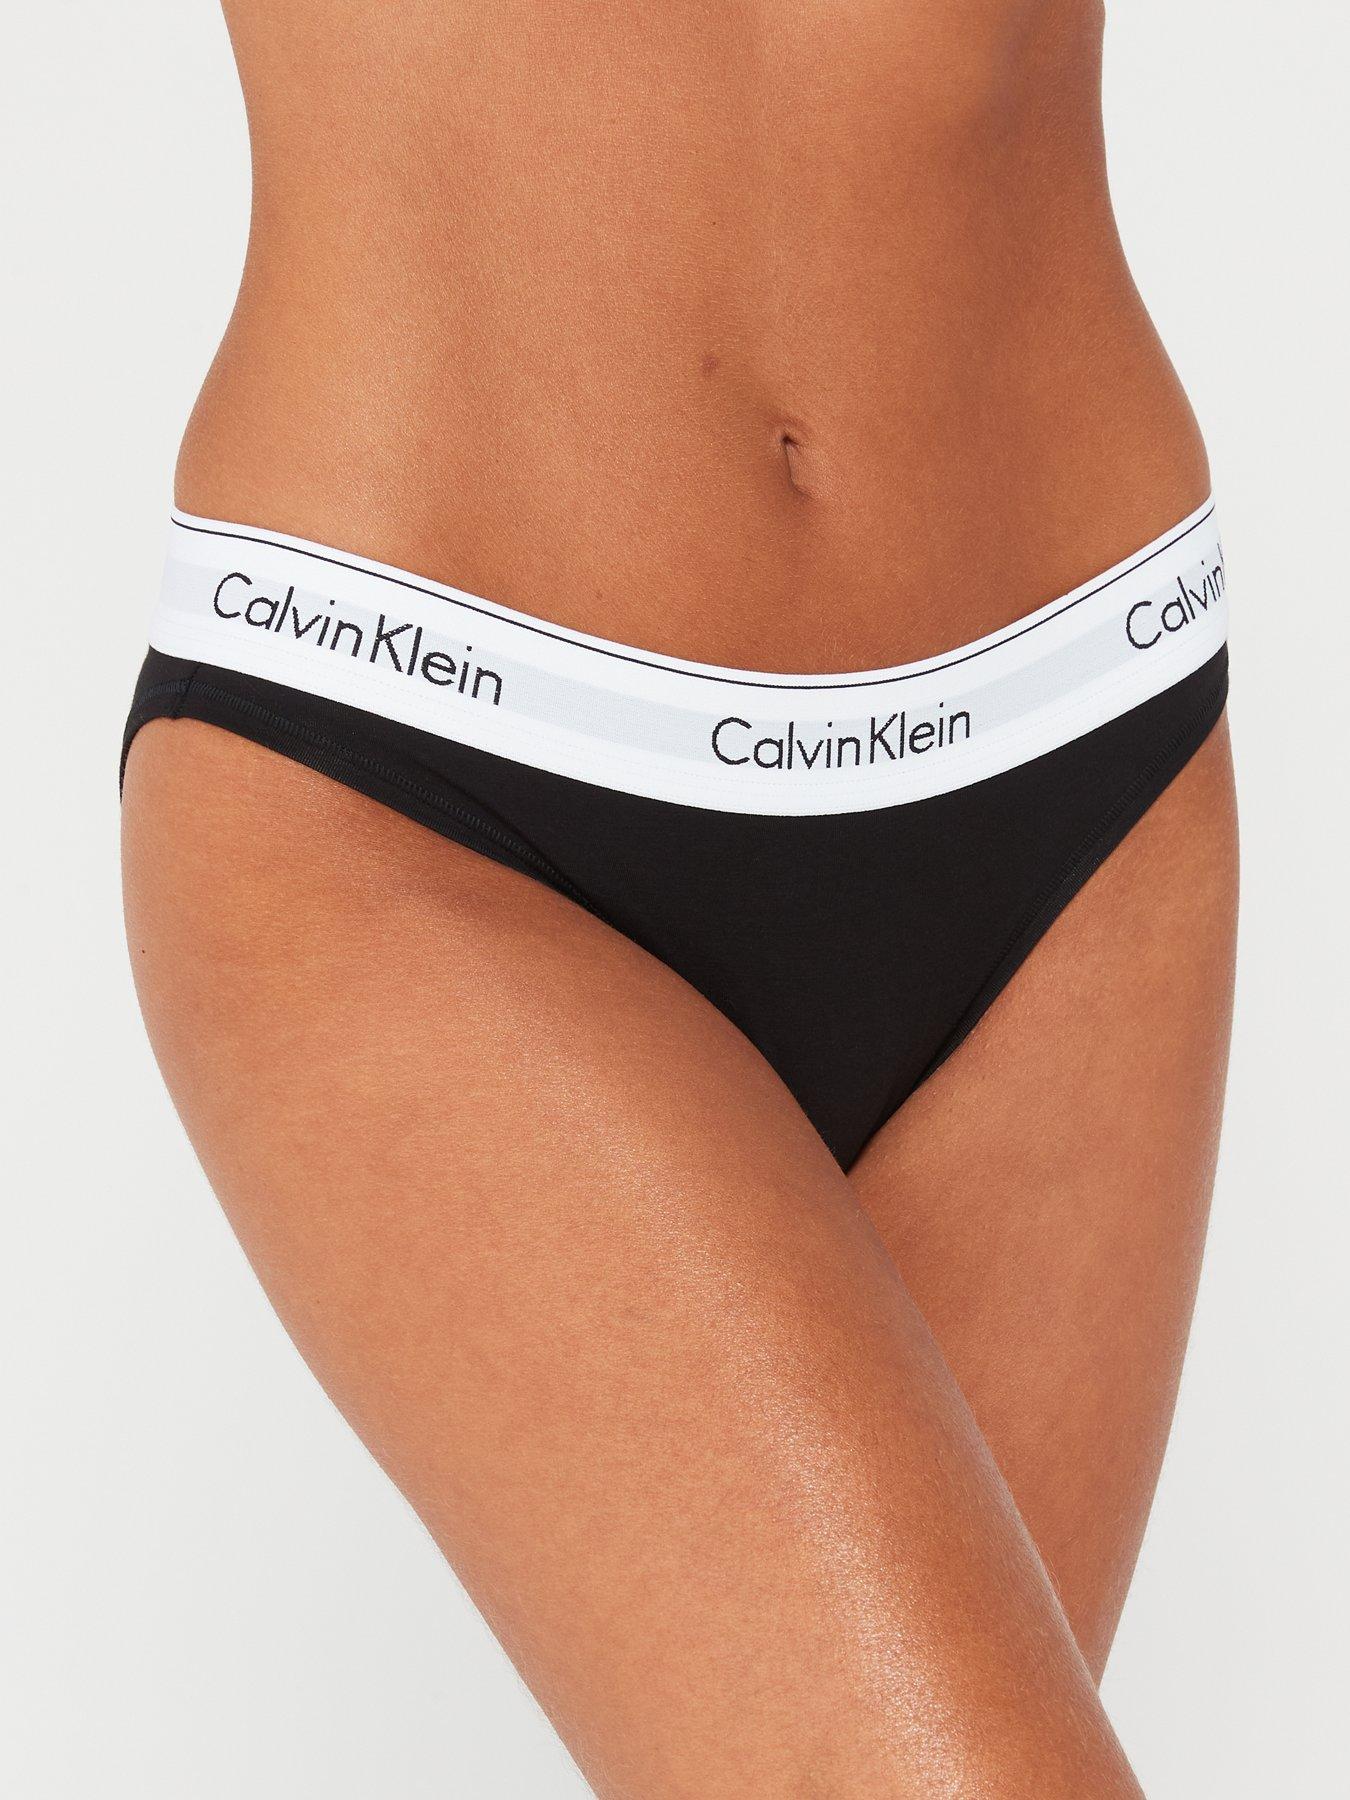 Calvin Klein Modern Cotton shorty brief in black